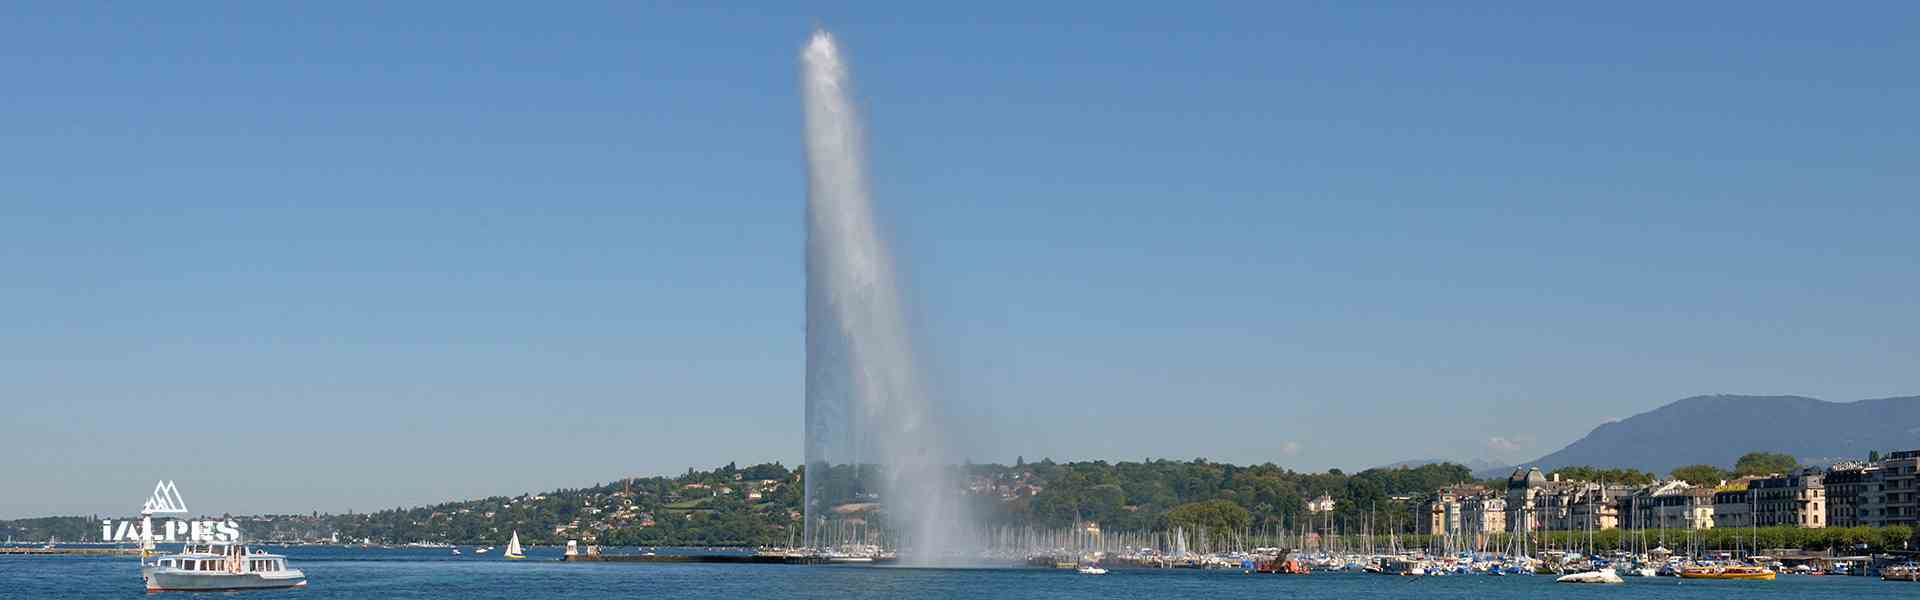 >Jet d'eau à Genève, Suisse